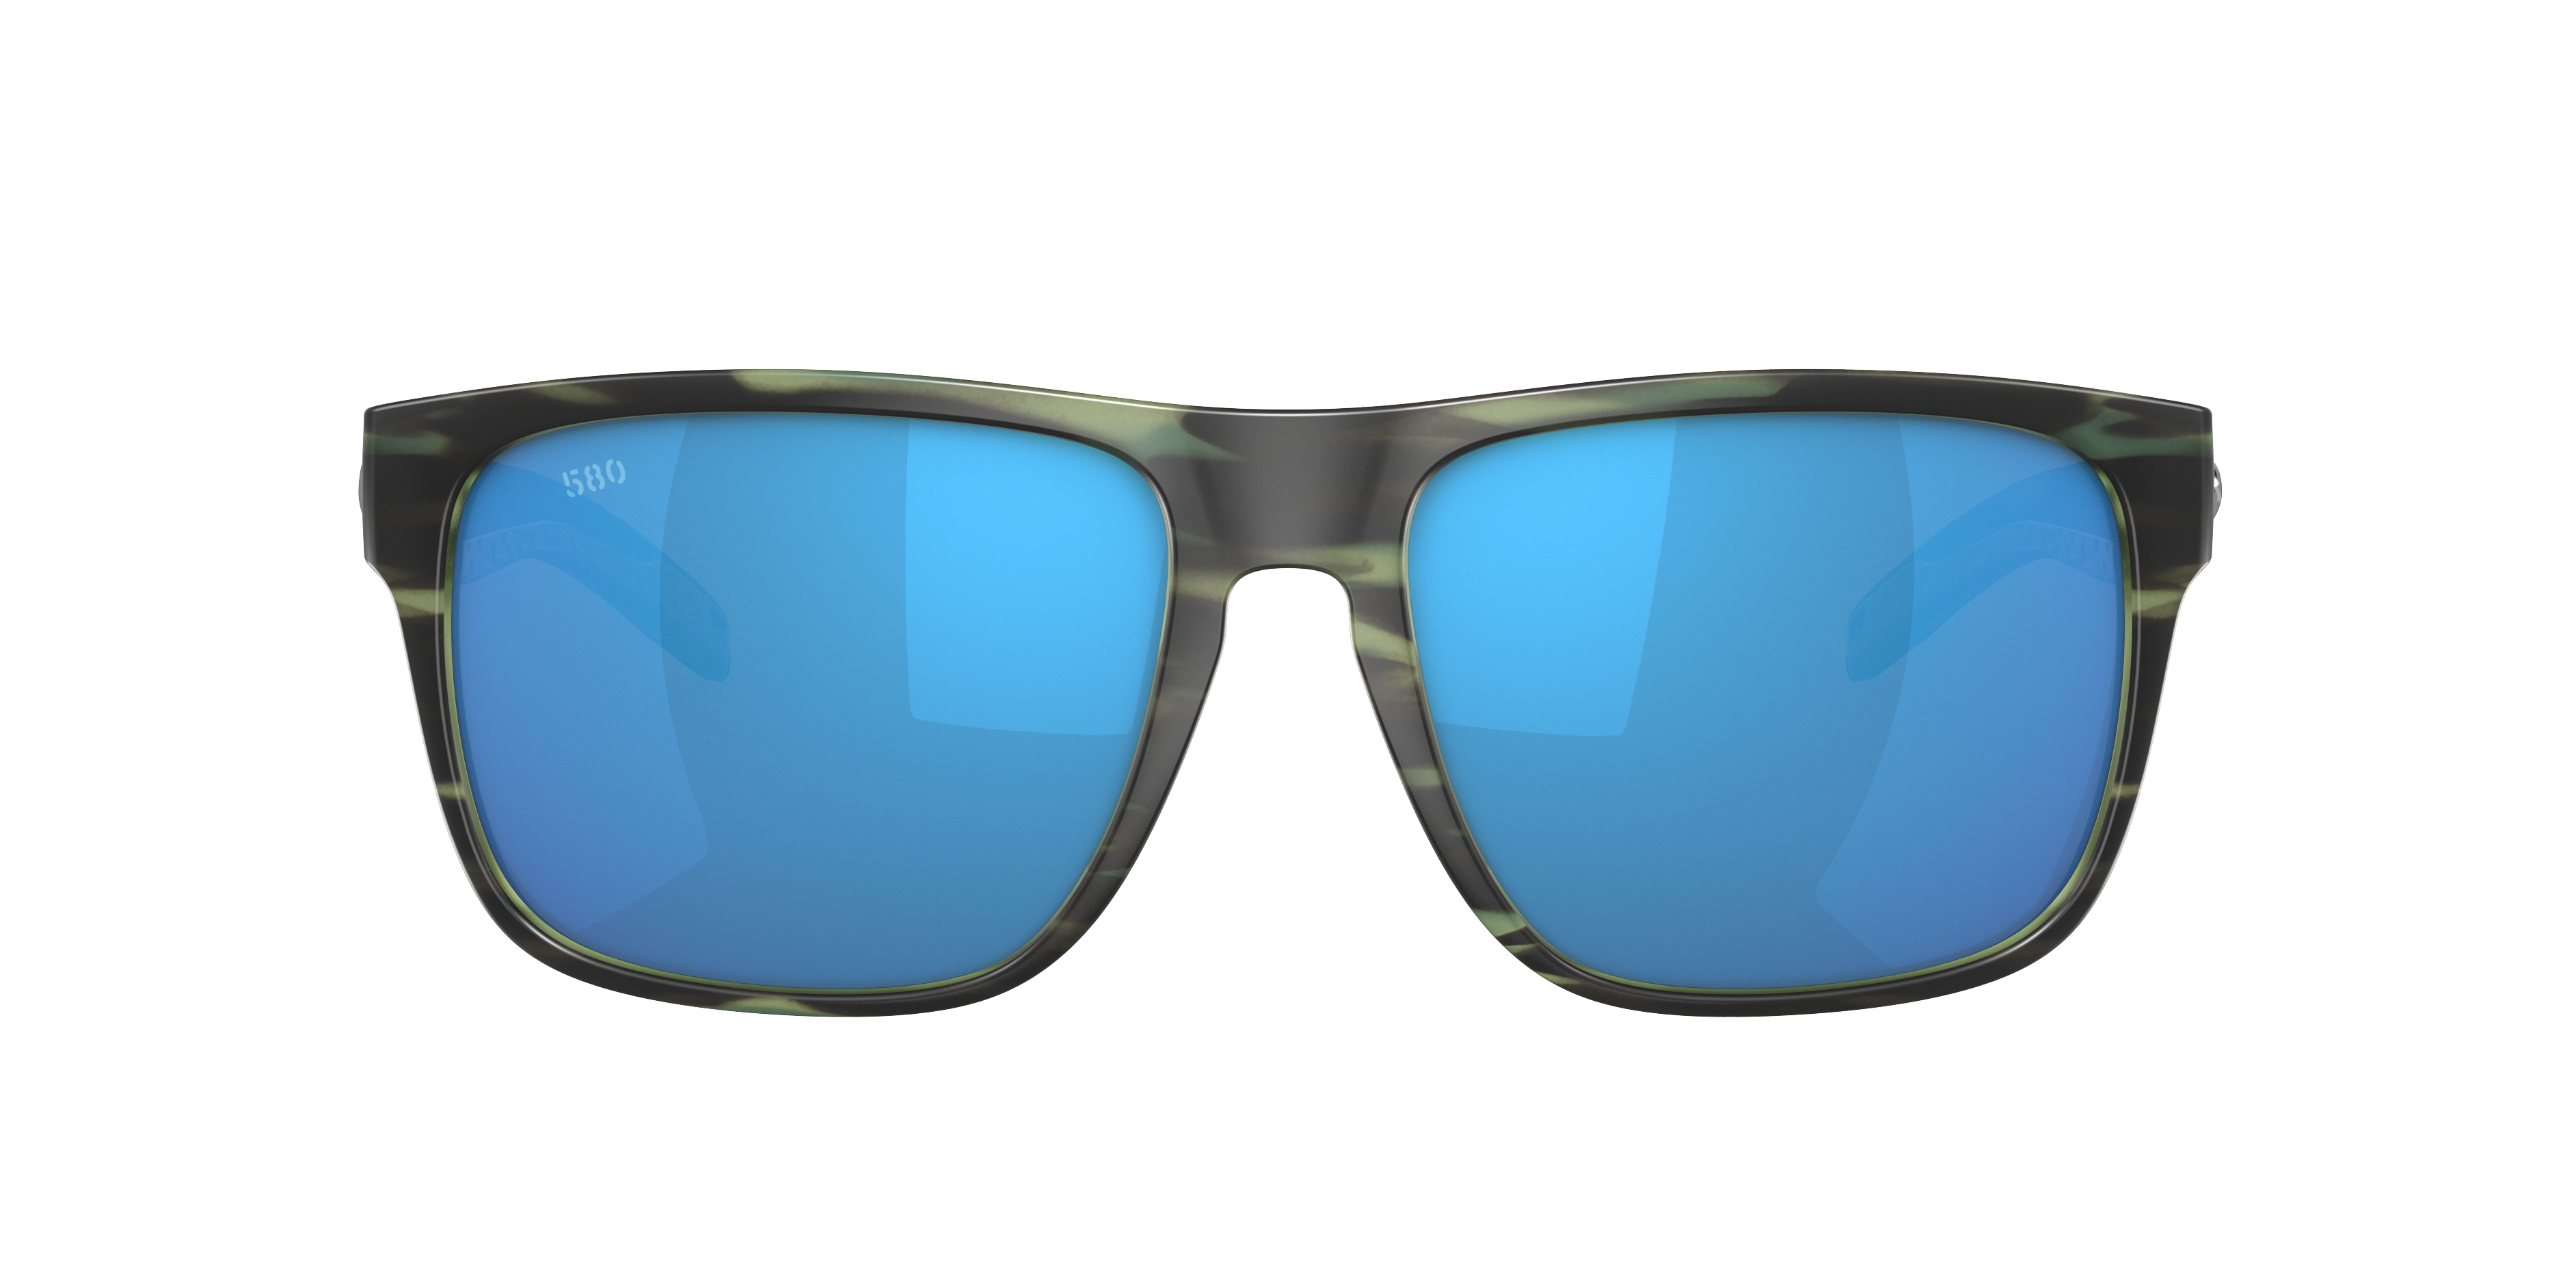 Costa Spearo 580G Polarized Sunglasses - Men